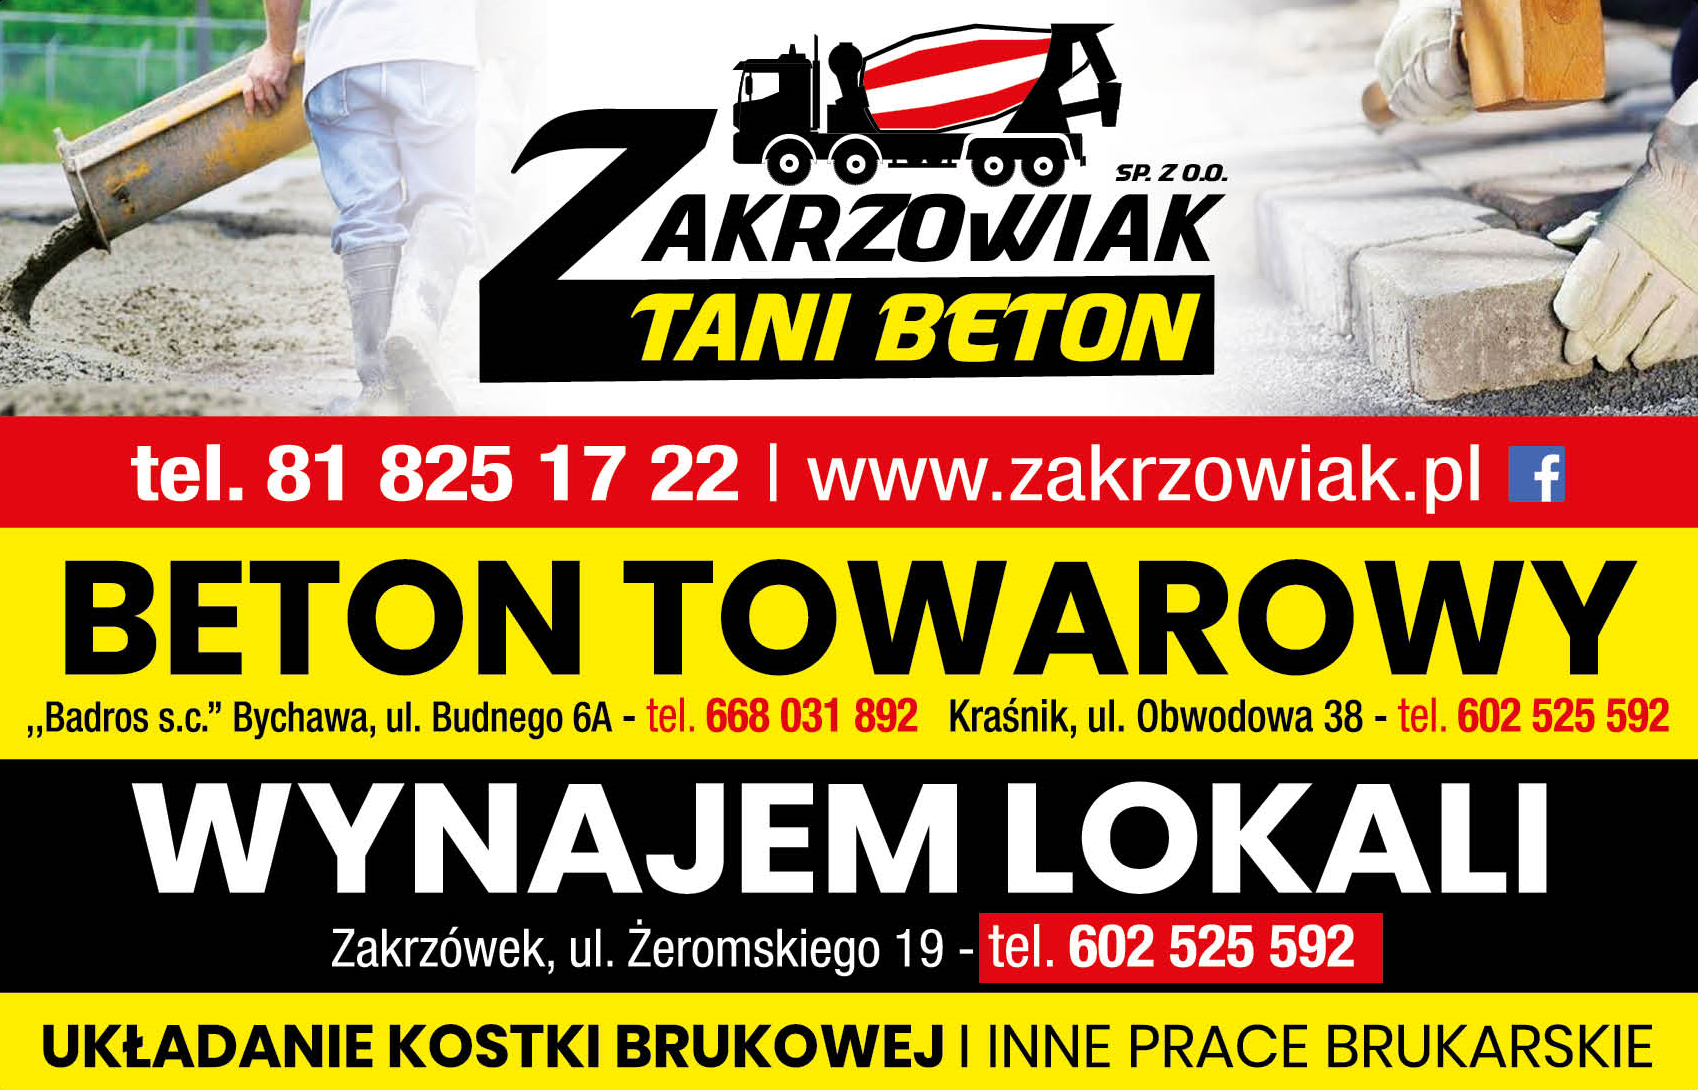 ZAKRZOWIAK Sp. z o.o. Kraśnik Beton Towarowy / Układanie Kostki Brukowej / Inne Prace Brukarskie